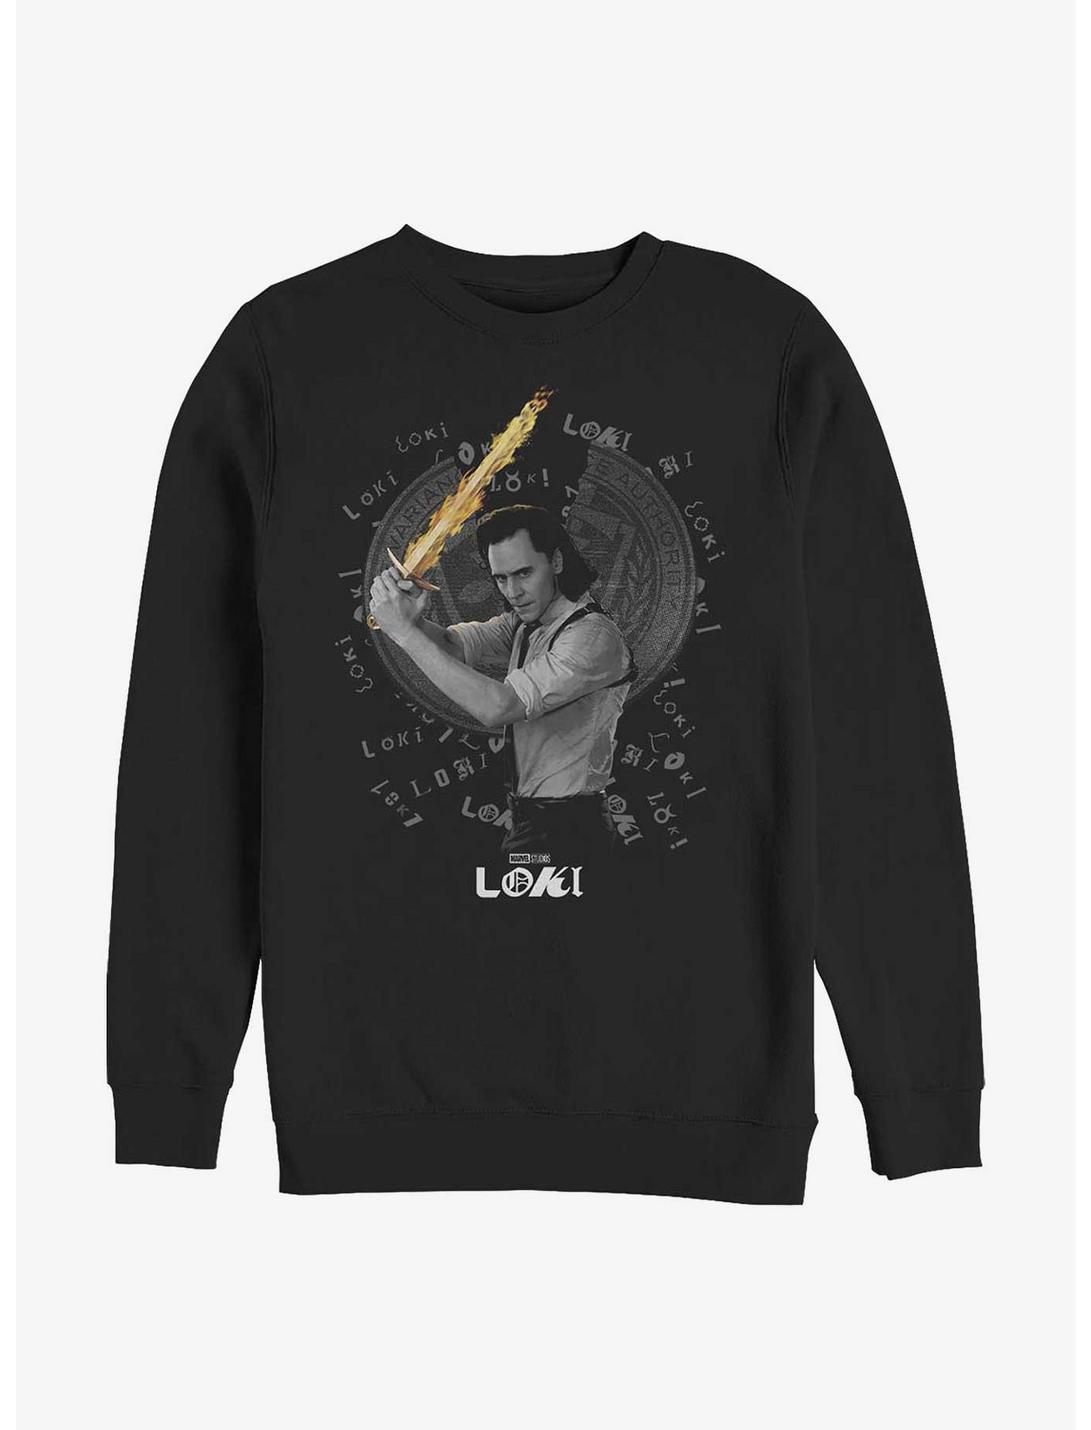 Marvel Loki Laevateinn Sword Sweatshirt, BLACK, hi-res